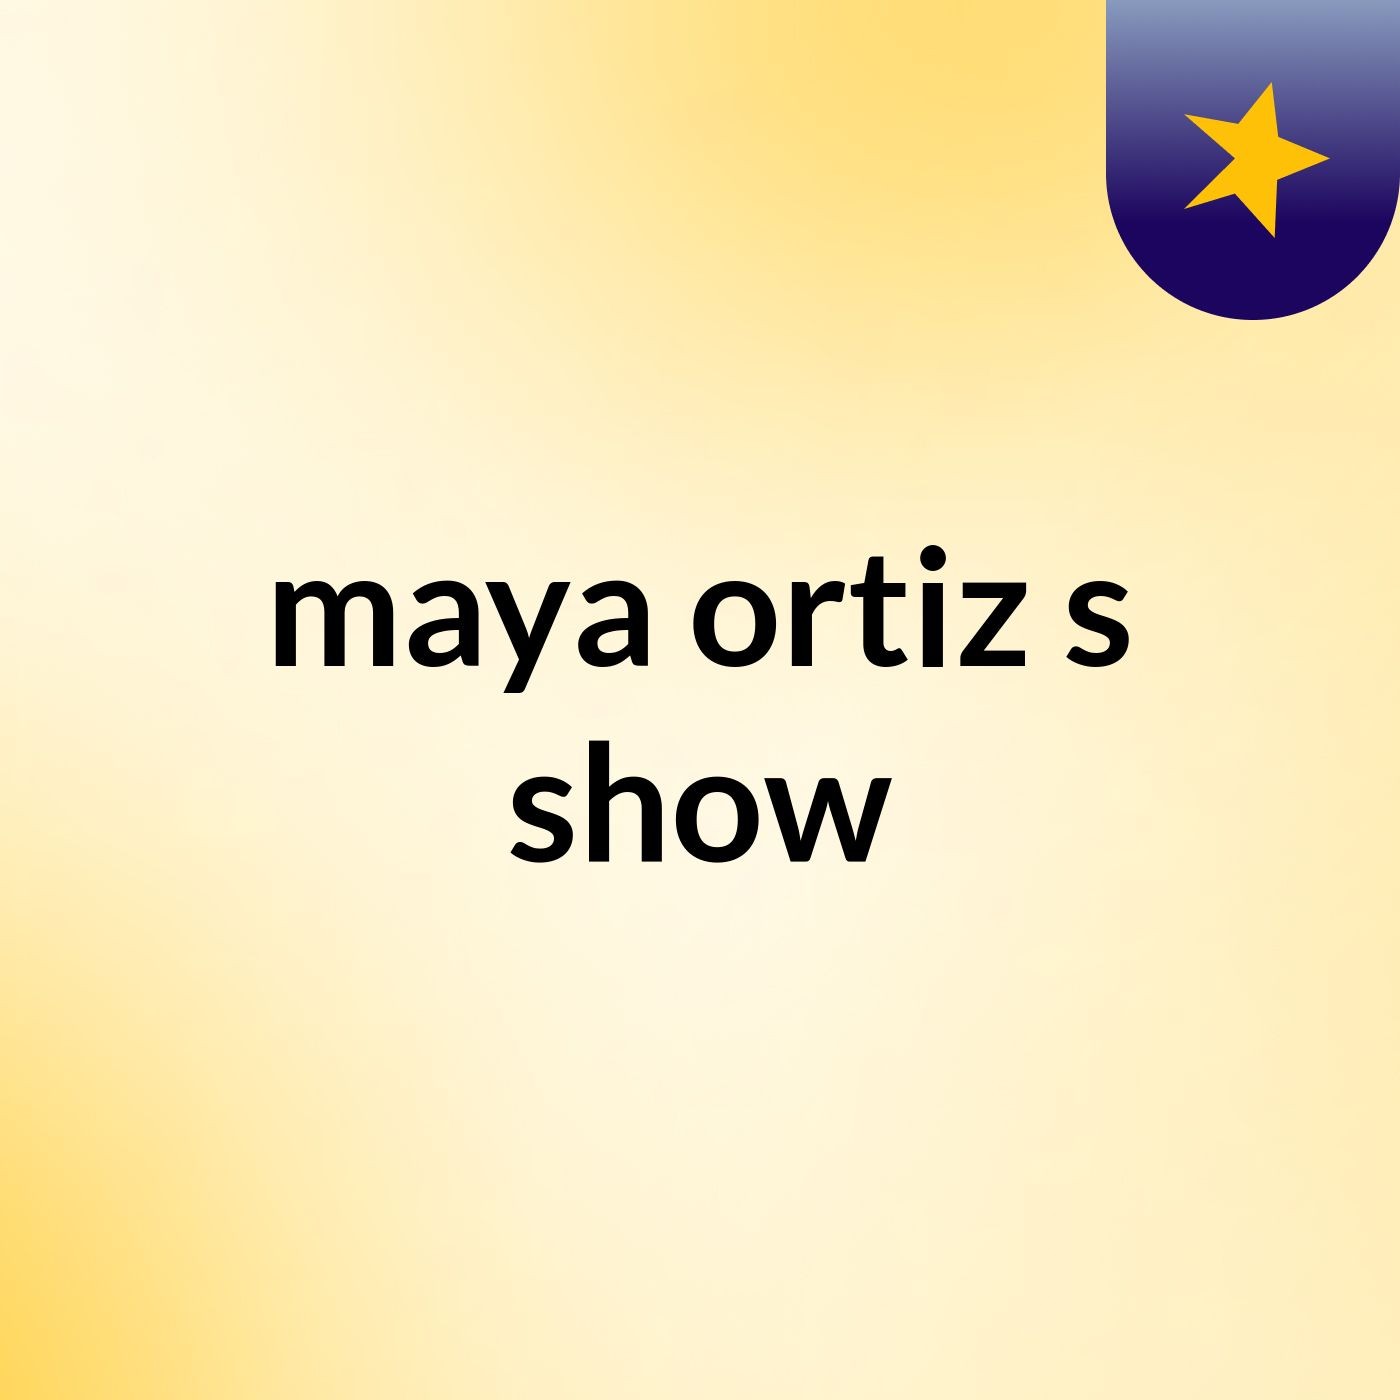 maya ortiz's show